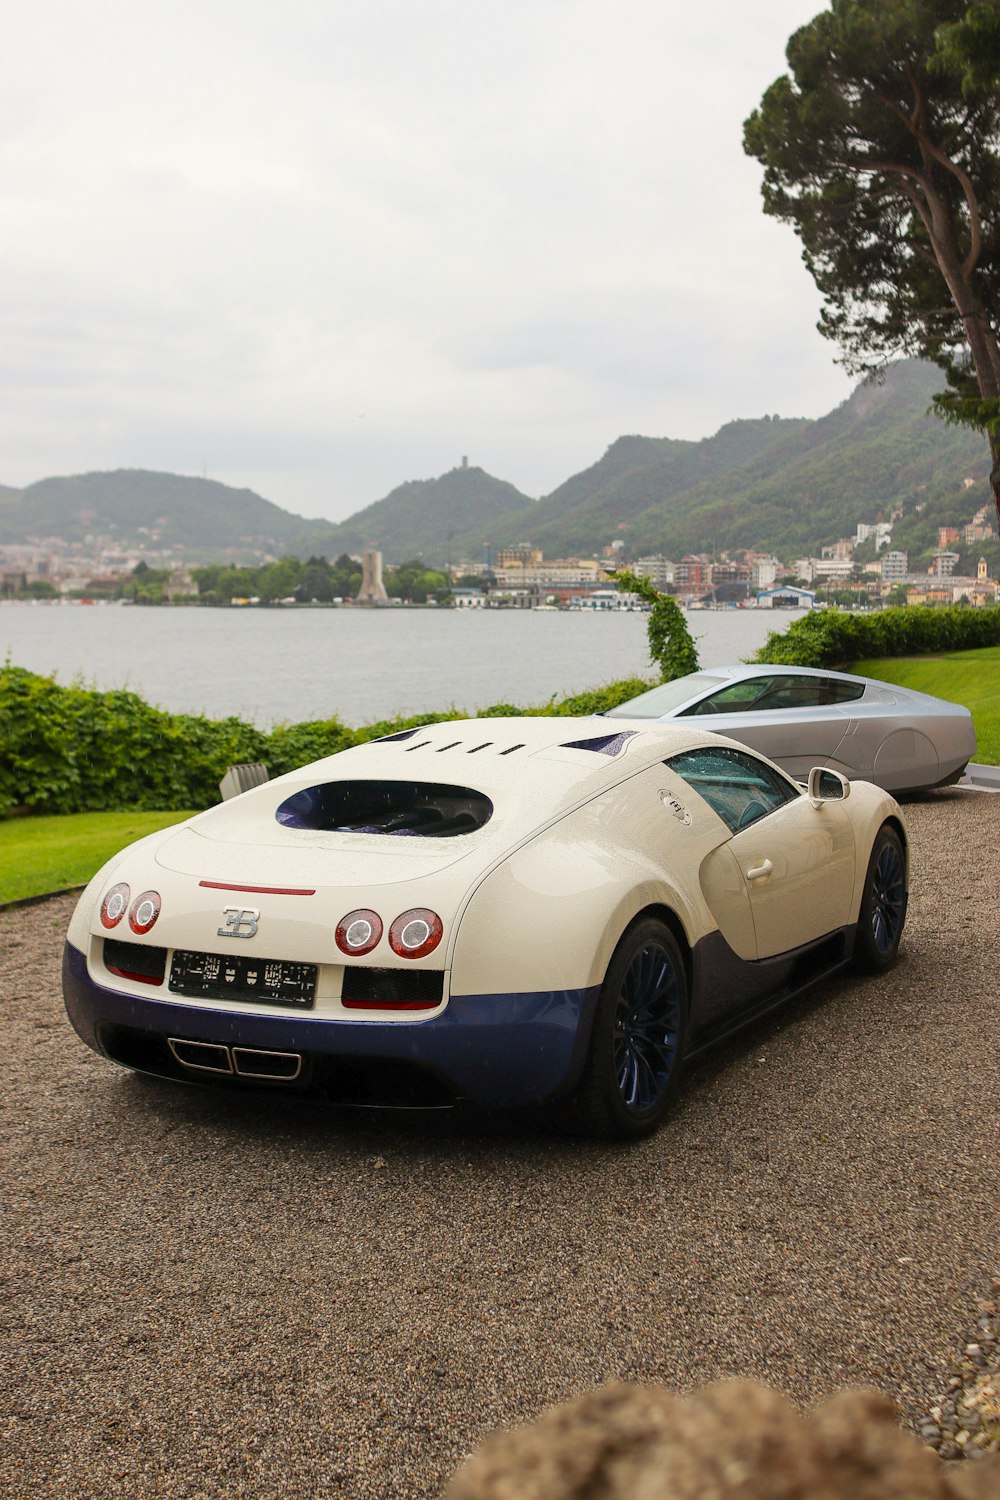 Un bugatti blanco y azul estacionado frente a un lago